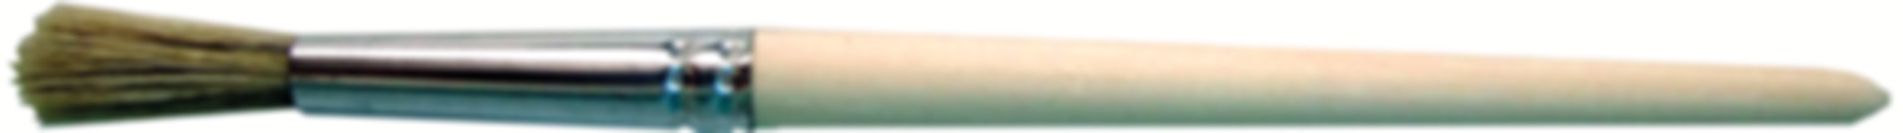 Rundpinsel 4 mm 799 299 001 - GF Hart PVC-U Formstücke